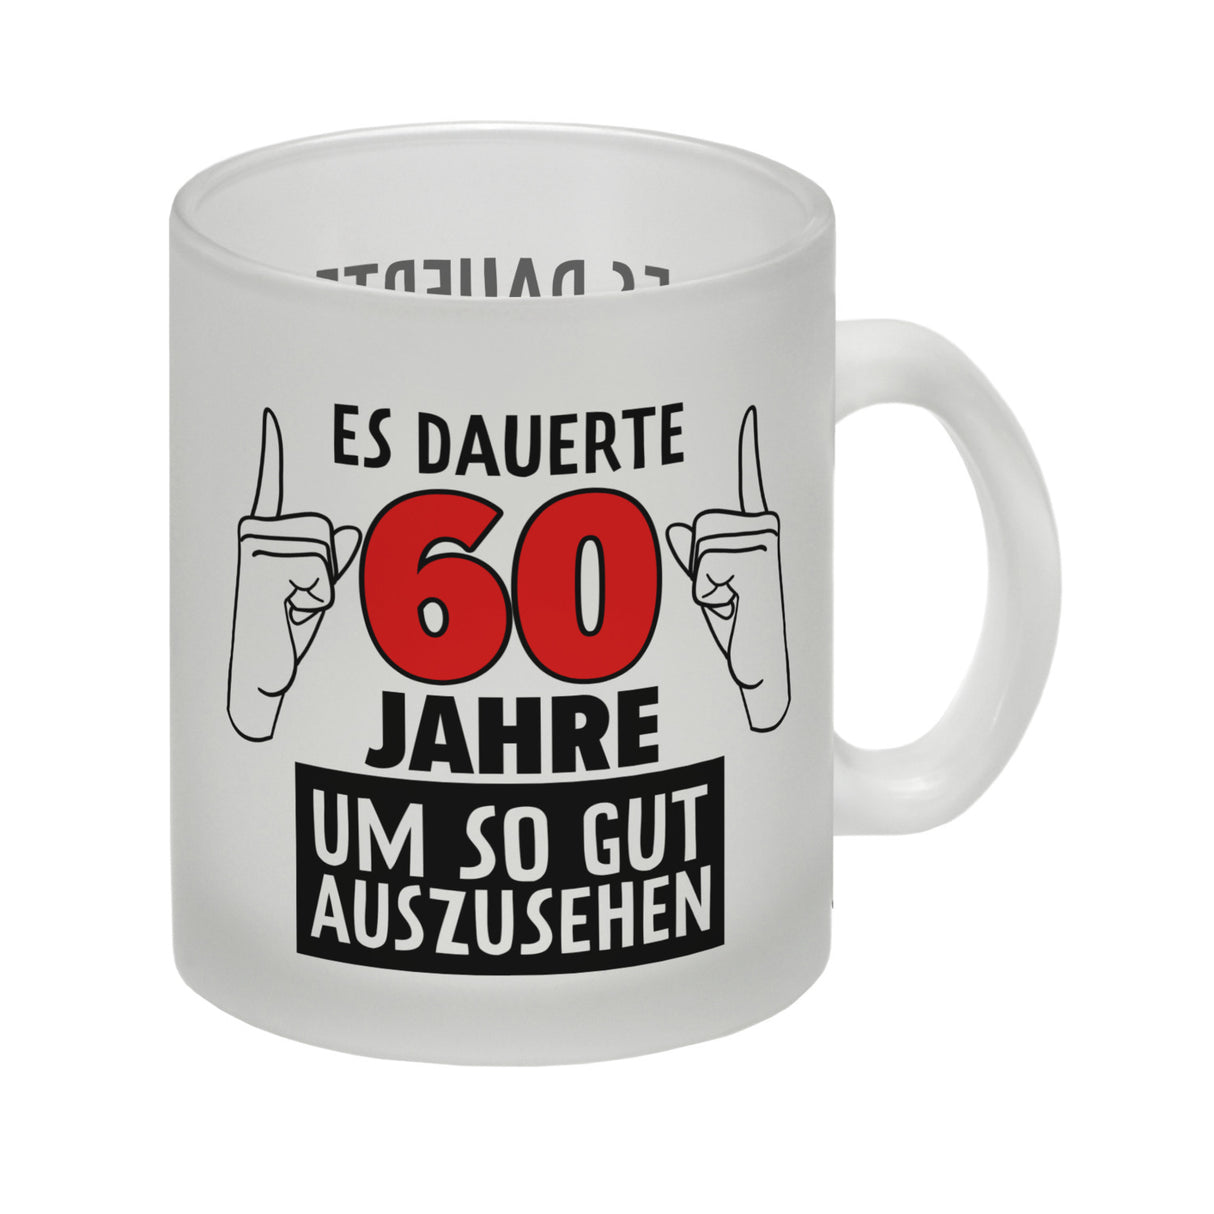 Witziger Kaffeebecher für den 60. Geburtstag mit Motiv: Gutes Aussehen